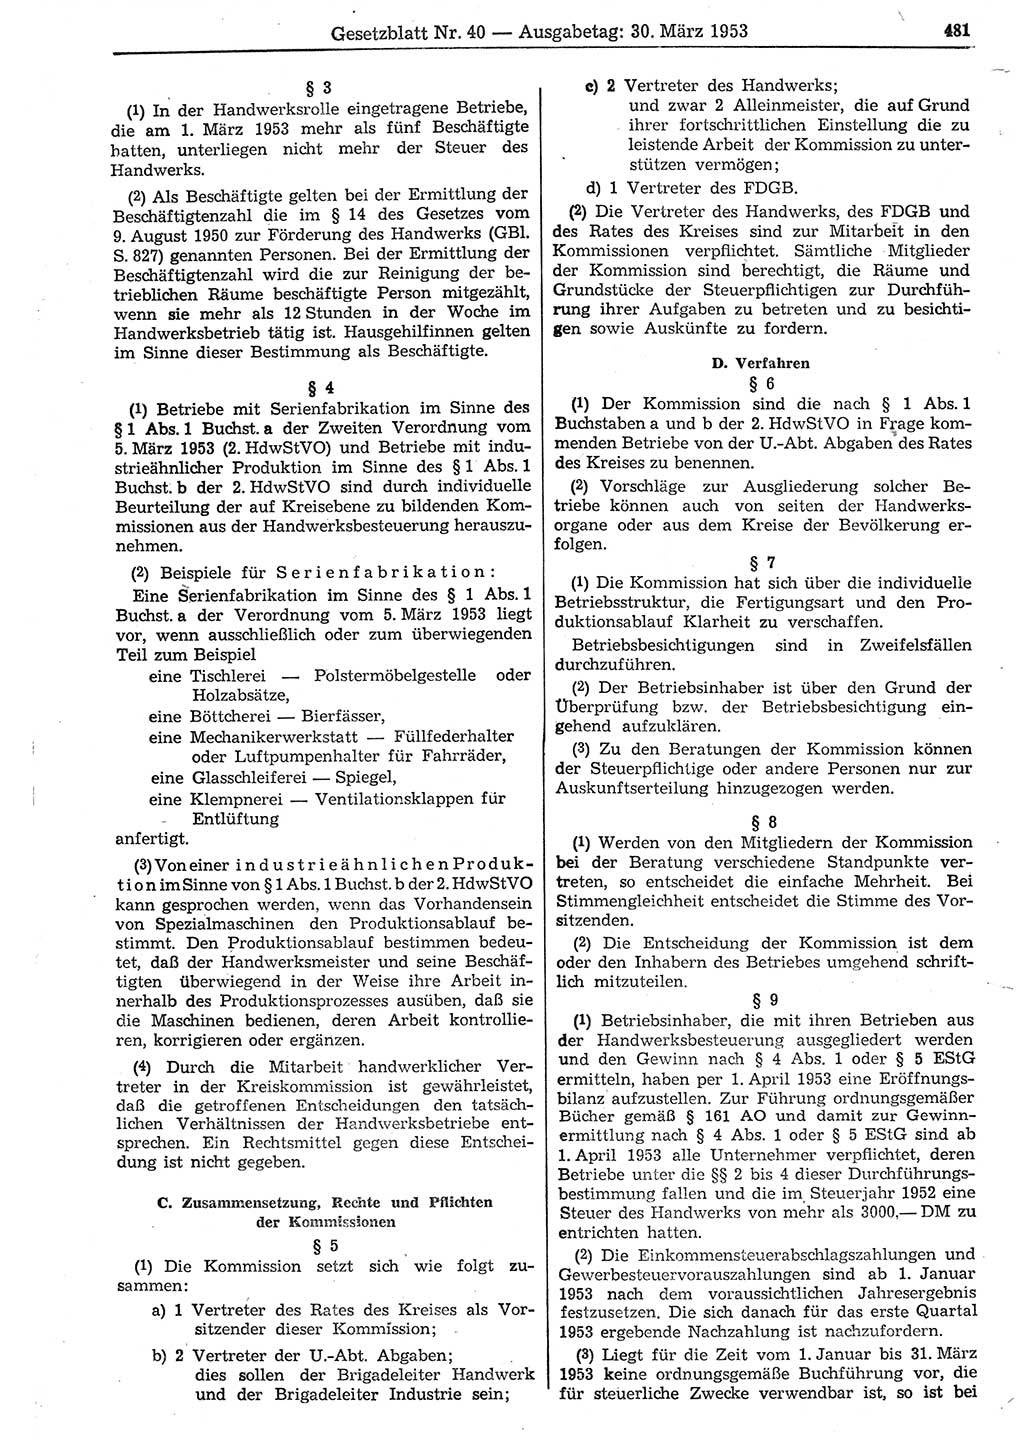 Gesetzblatt (GBl.) der Deutschen Demokratischen Republik (DDR) 1953, Seite 481 (GBl. DDR 1953, S. 481)